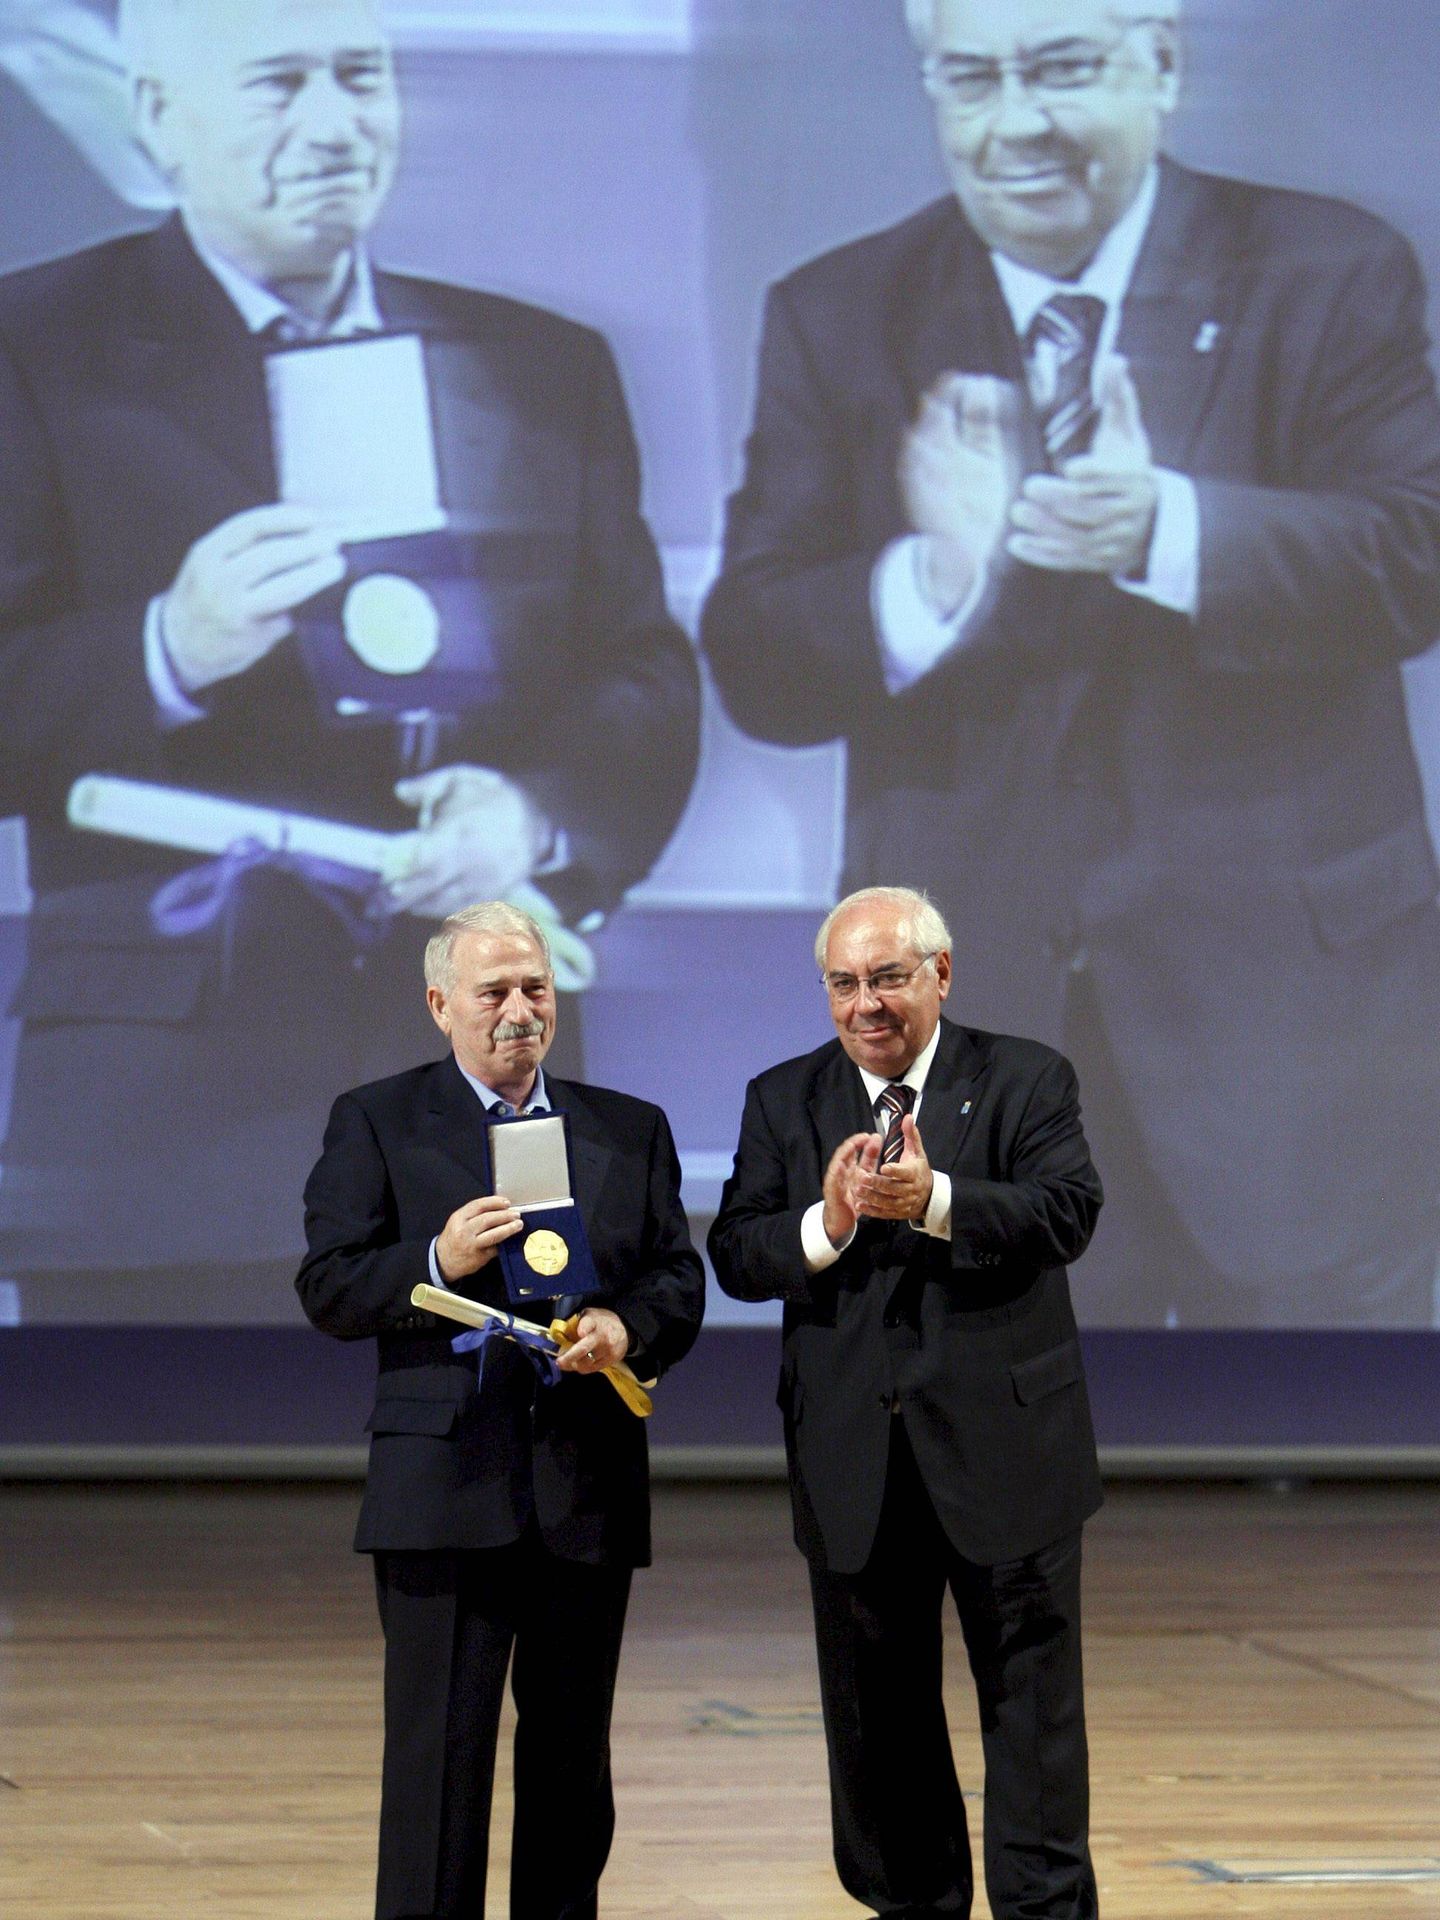 En 2010, el presidente del Principado, Vicente Álvarez Areces, entregó la Medalla de Asturias, en su categoría de Oro, al sindicato de Obreros Mineros de Asturias, galardón recogido por Fernández Villa. (EFE/José Luis Cereijido)